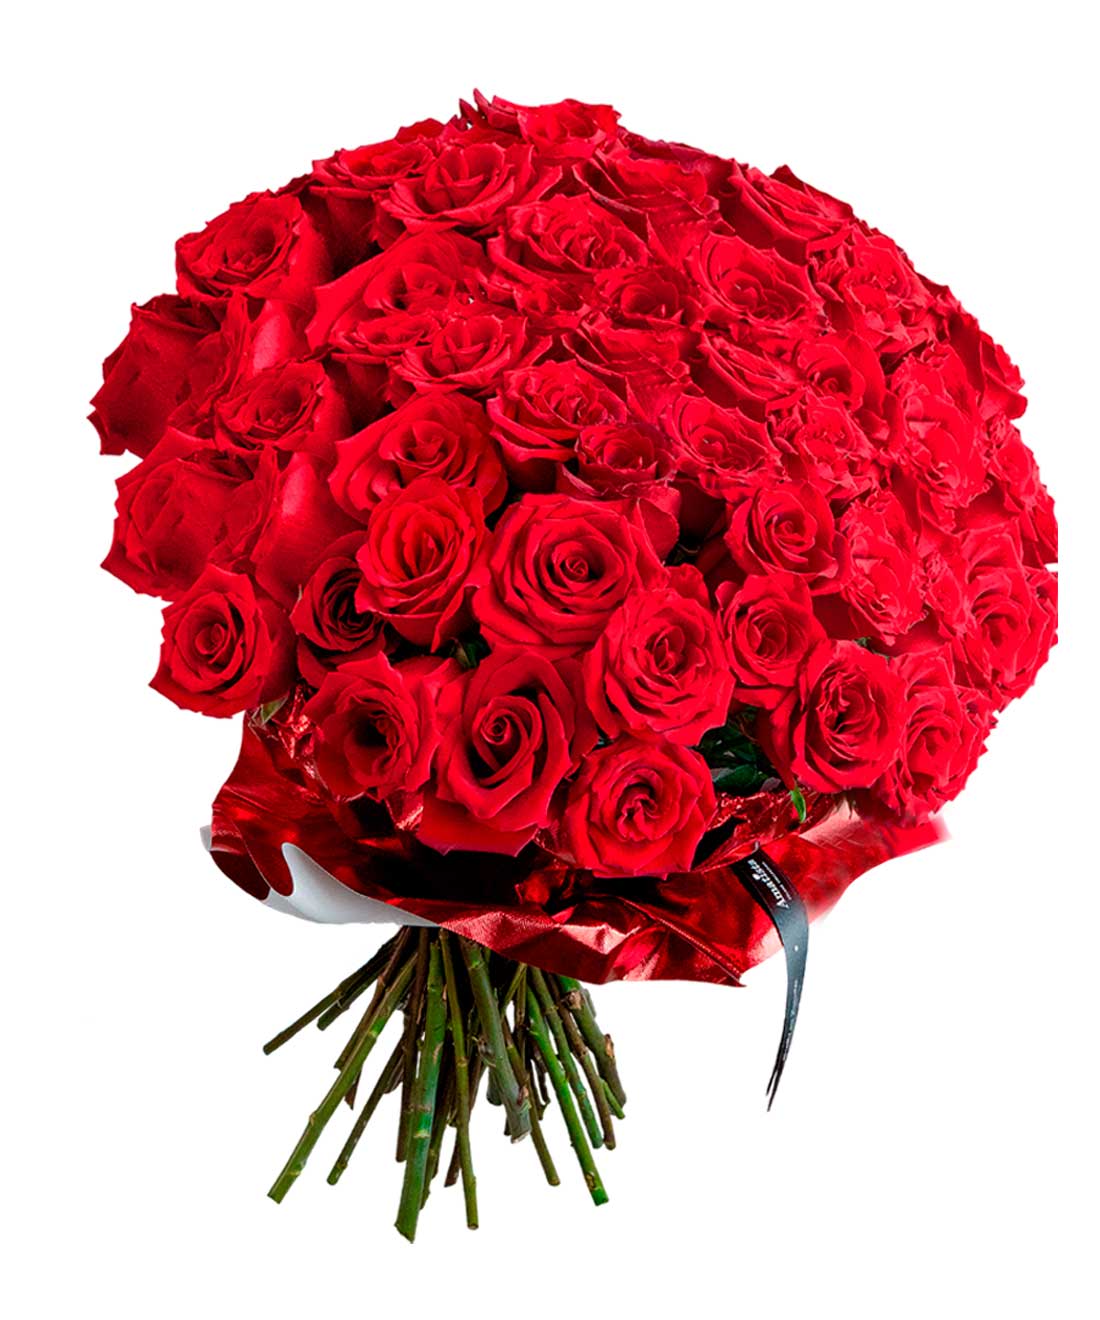 Ramo De 100 Rosas Rojas - Detalles Amatista